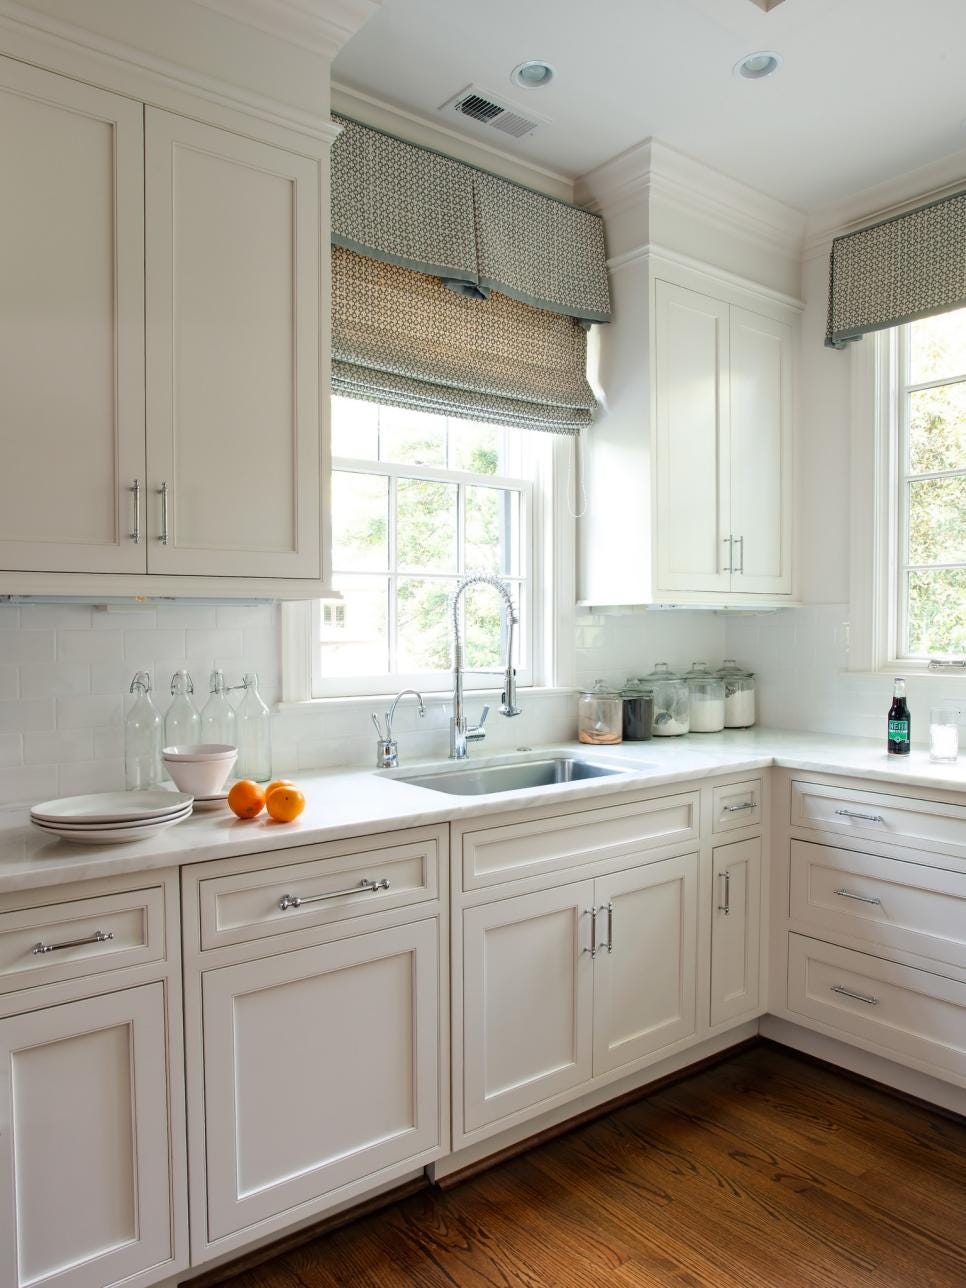 10 Winning Kitchen Window Treatment Ideas By Homedesignkey Medium